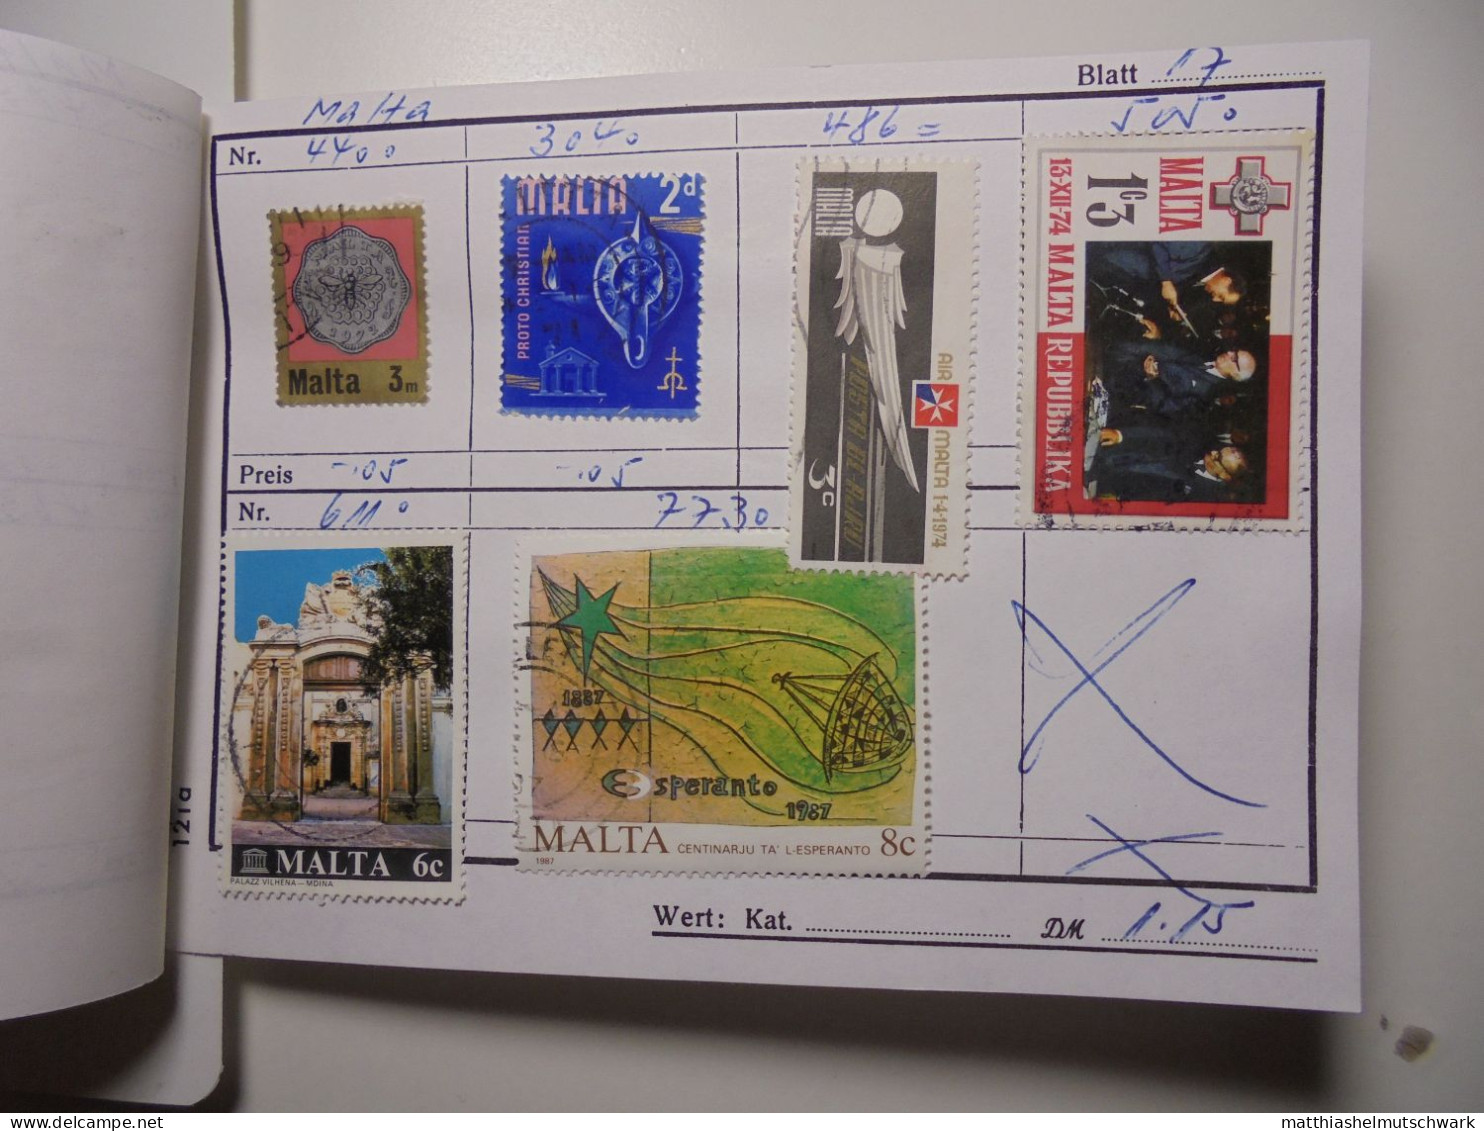 Auswahlheft Nr. 960 3 Blätter 22 Briefmarken  Malta 1901-1987/Mi Nr. 176-773, Unvollständig € 7,50 Stam - Malte